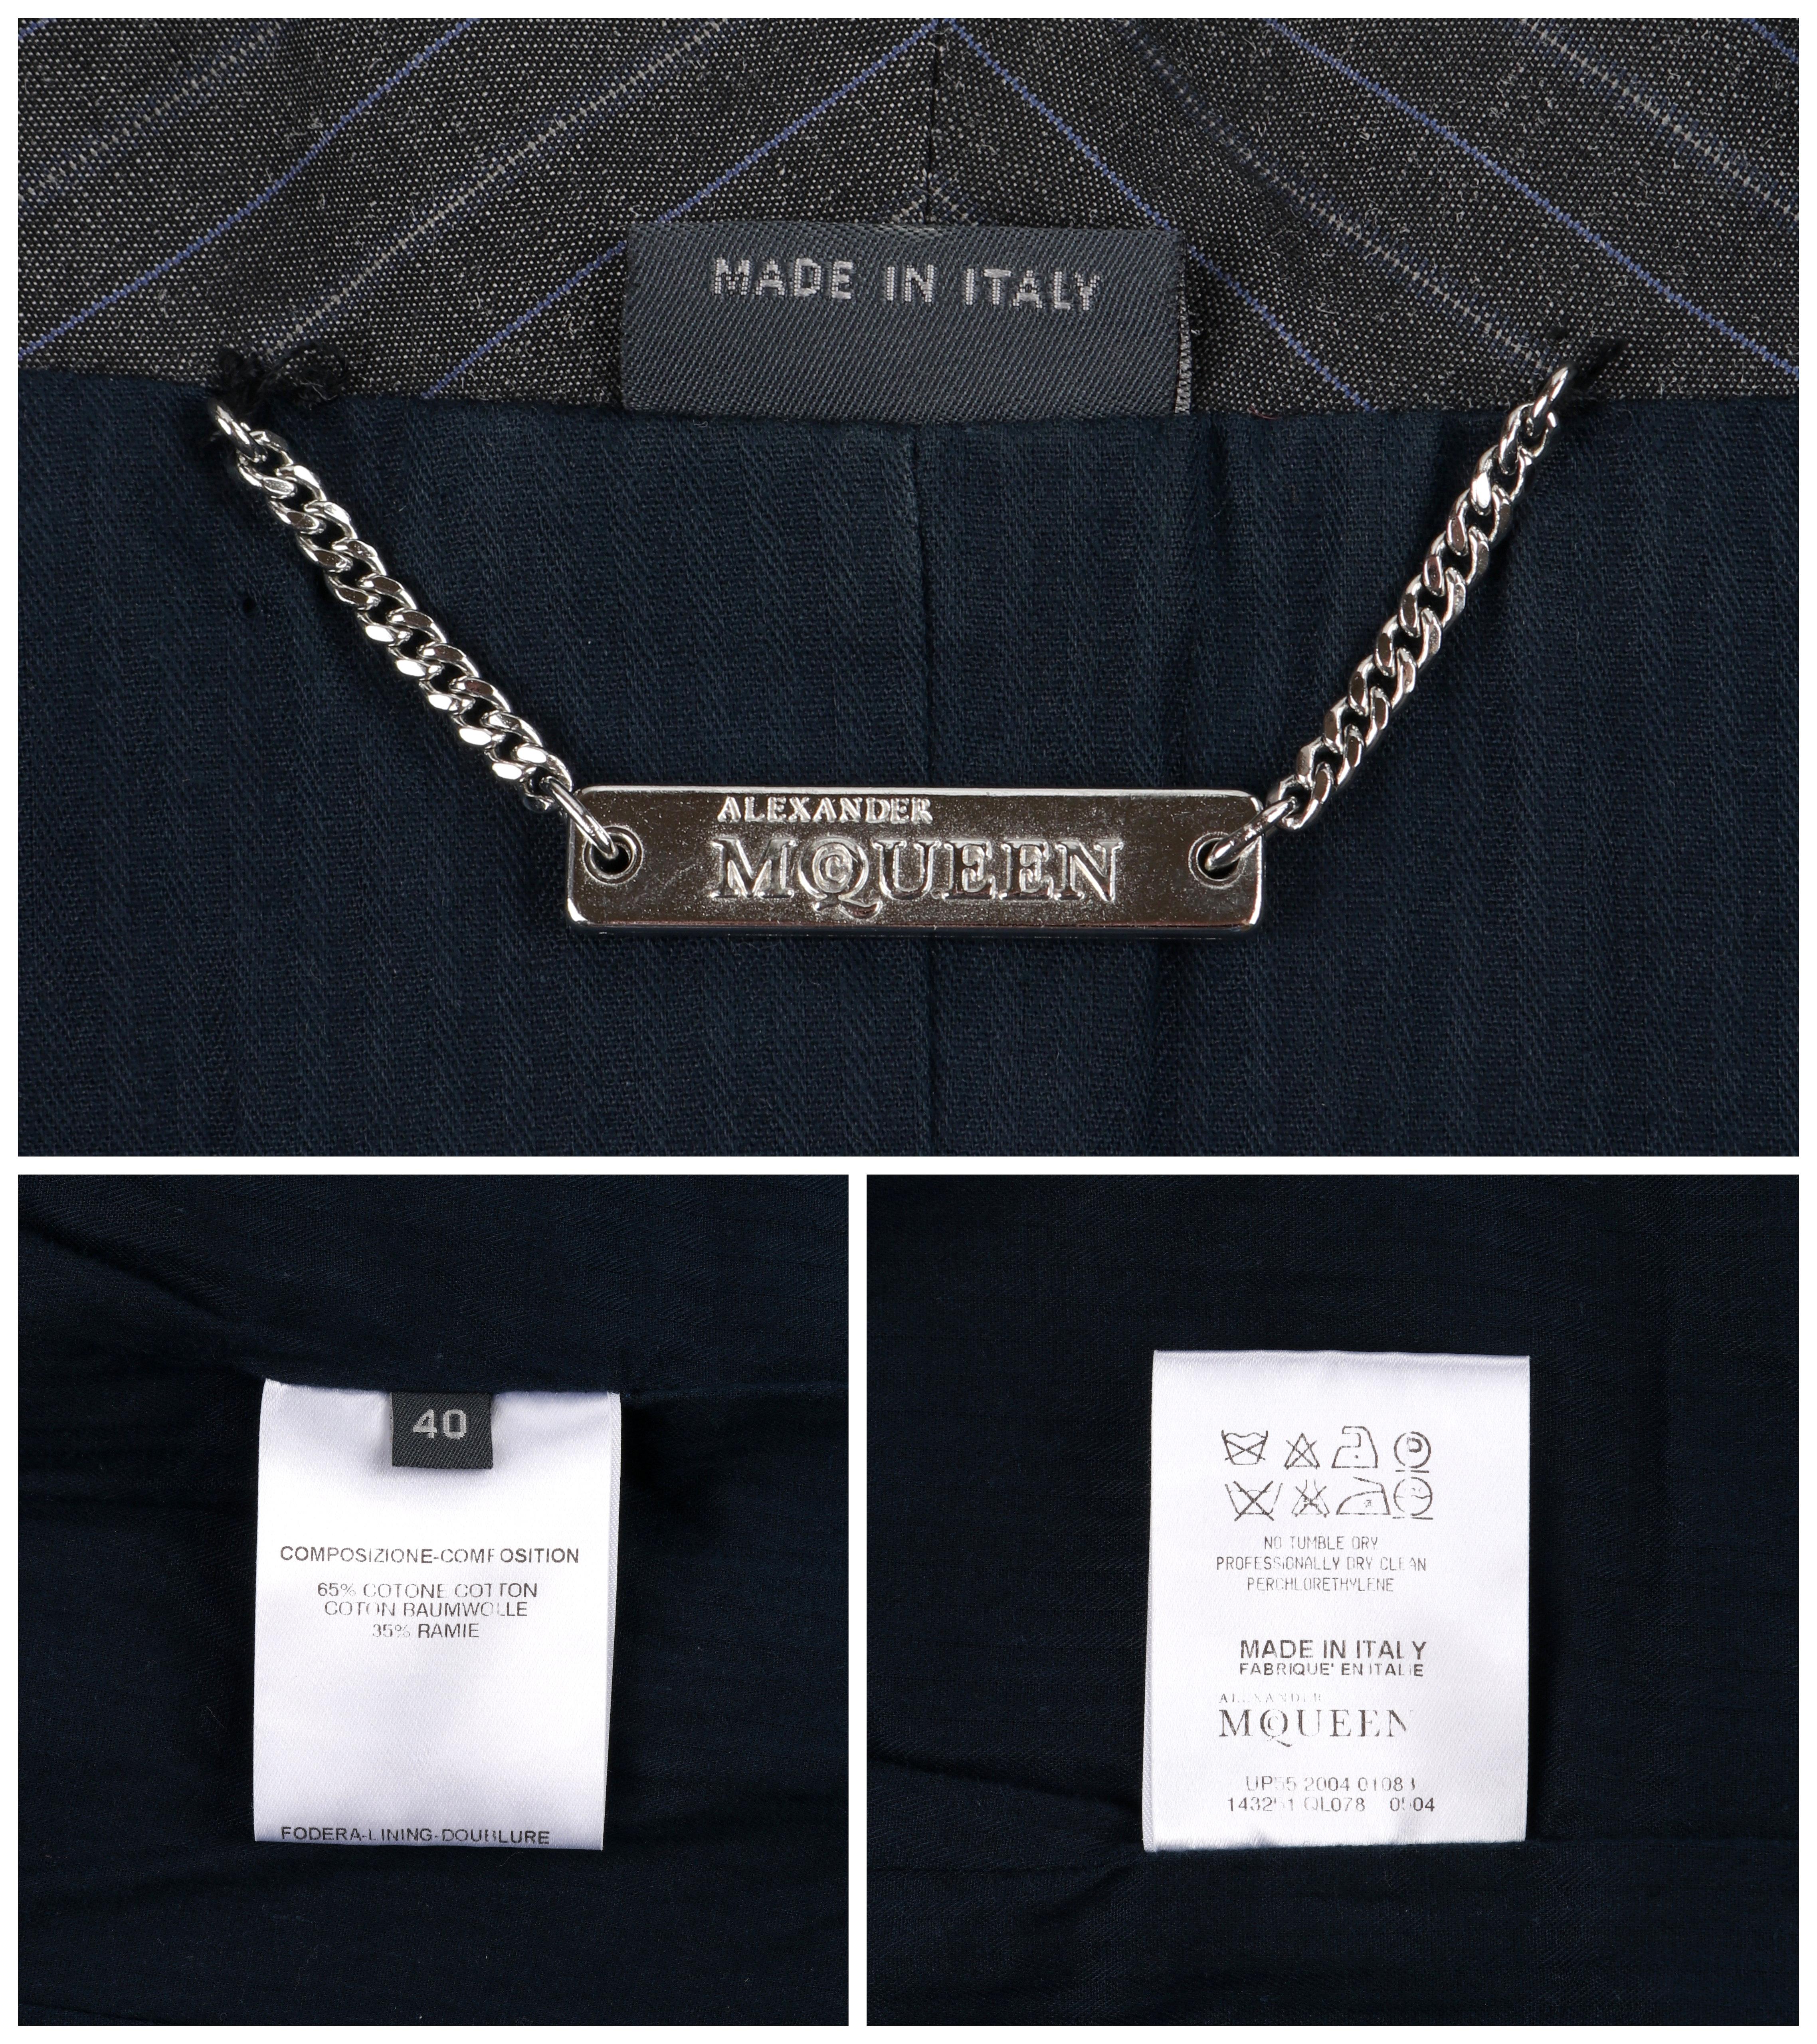 ALEXANDER McQUEEN S/S 2005 Grey Pinstripe Sailor Blazer Jacket Shawl Collar 5